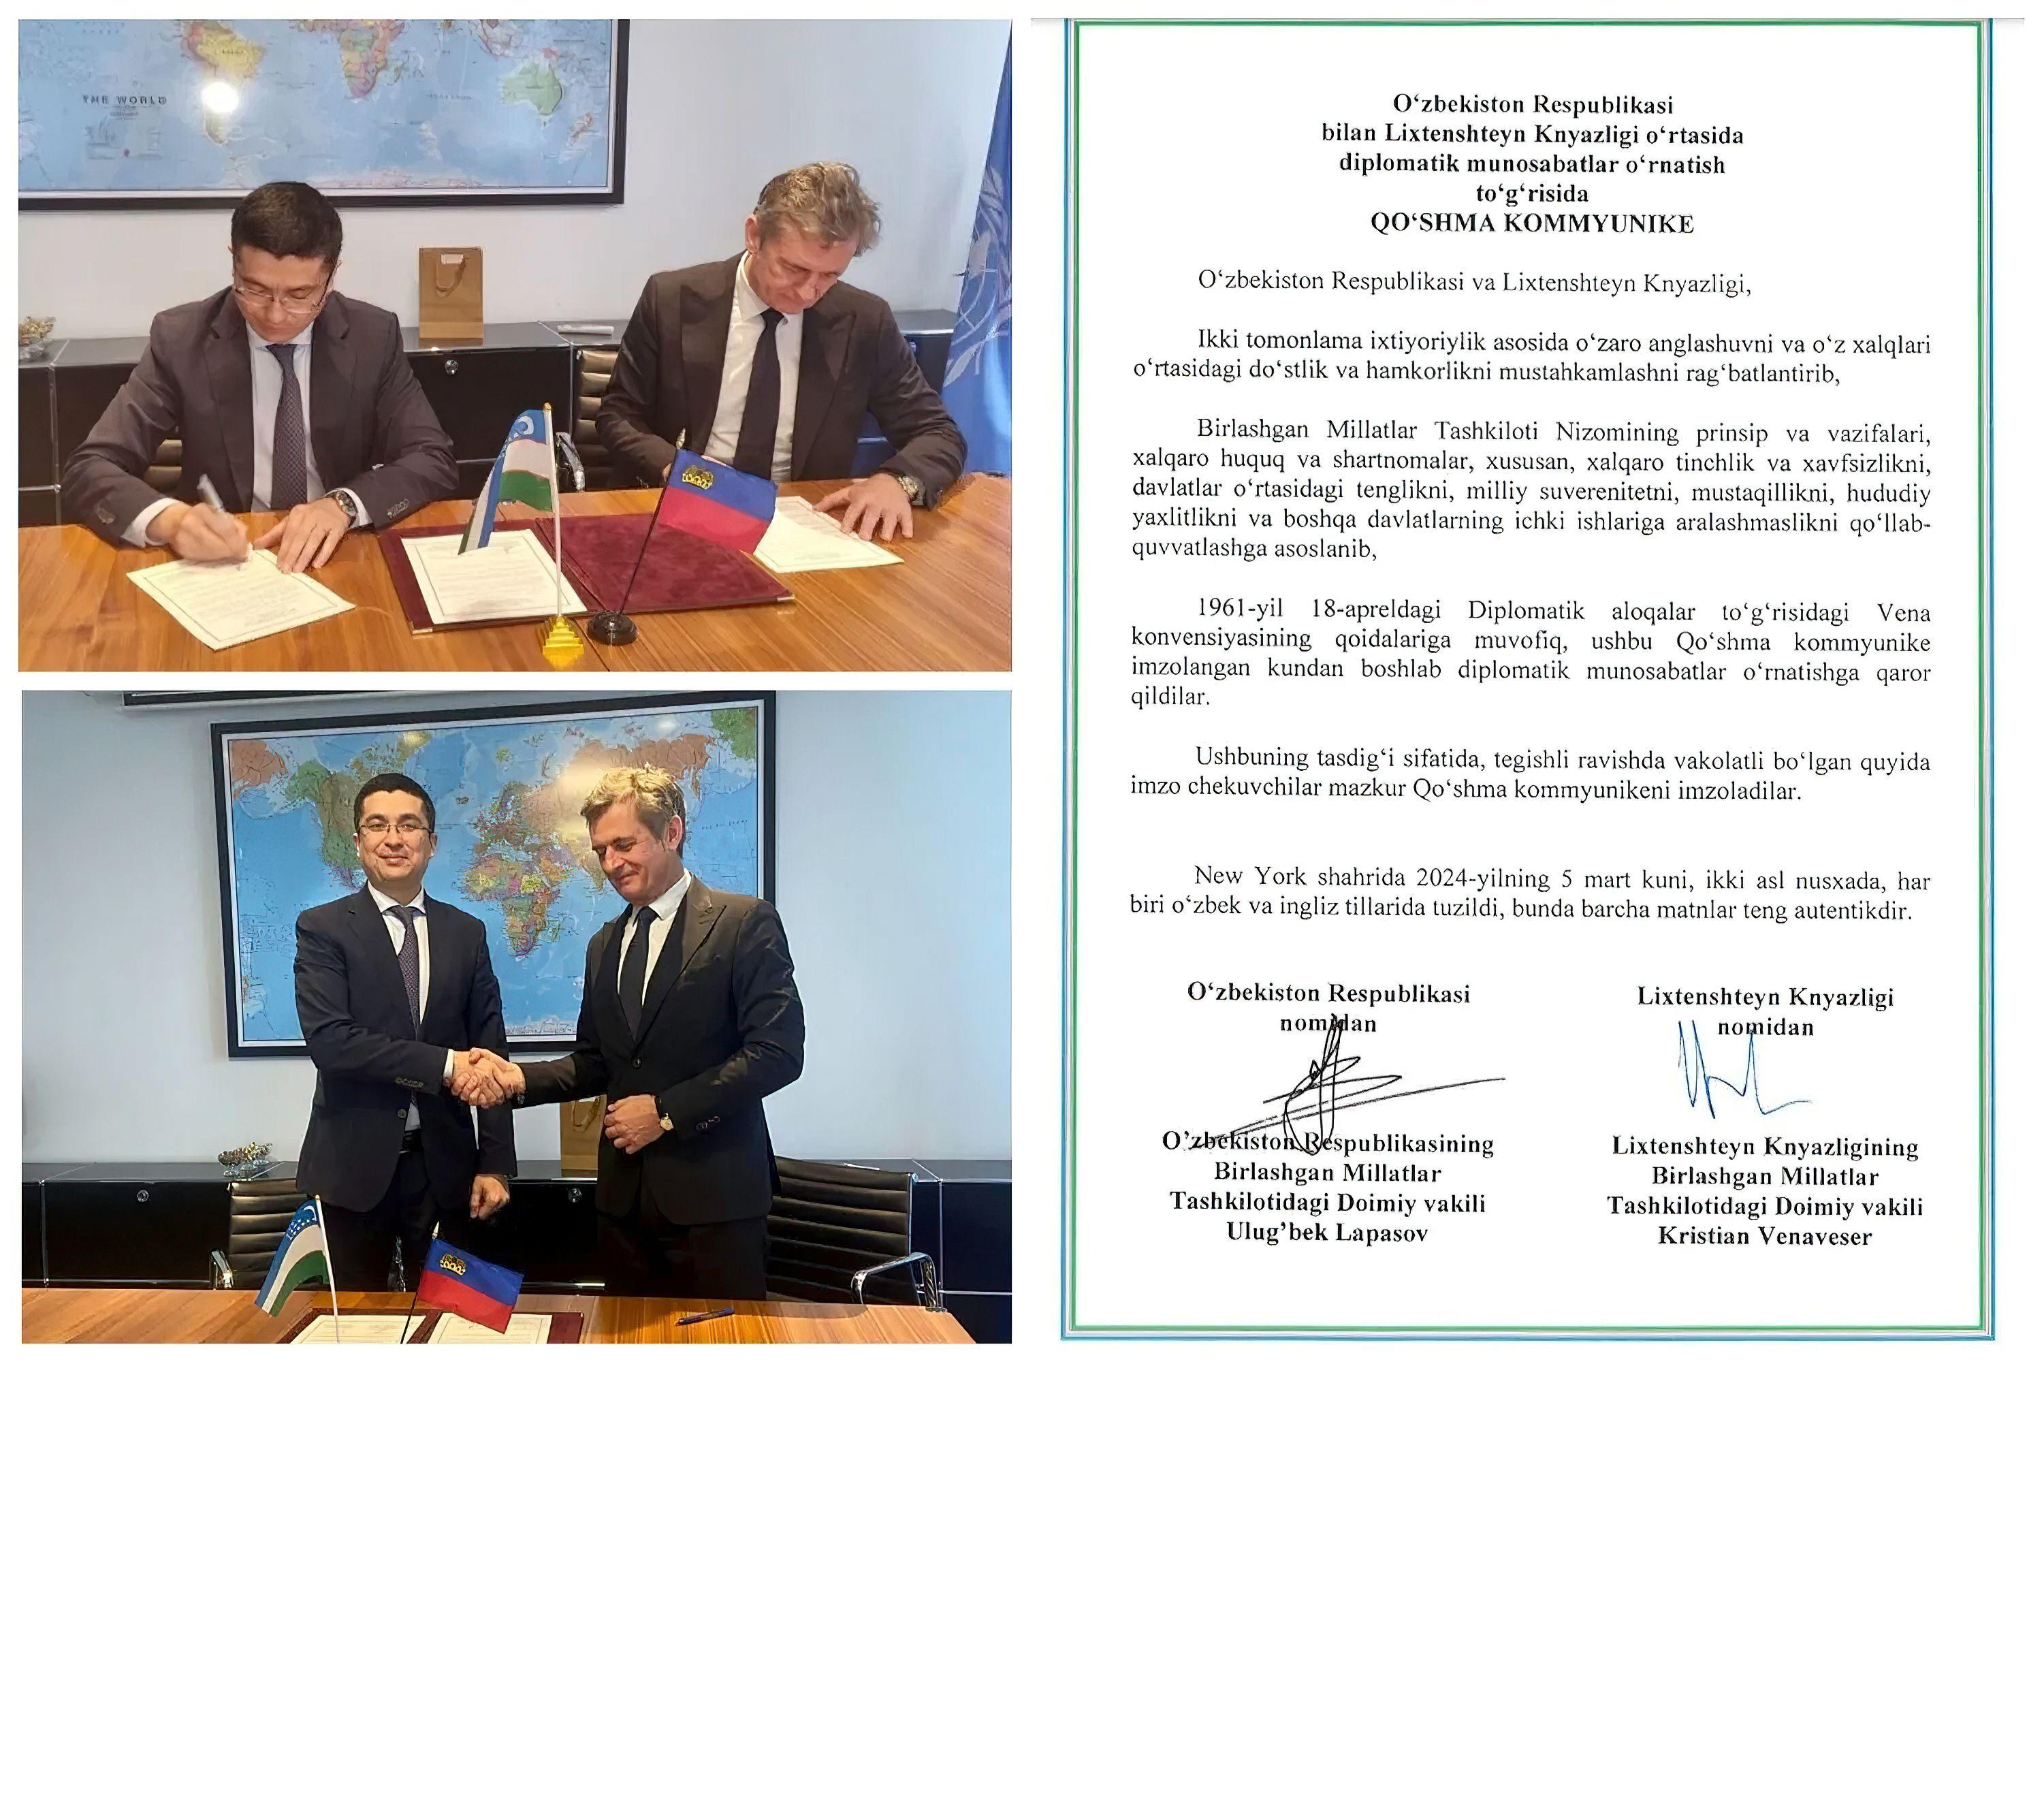 Узбекистан установил дипломатические отношения с Лихтенштейном